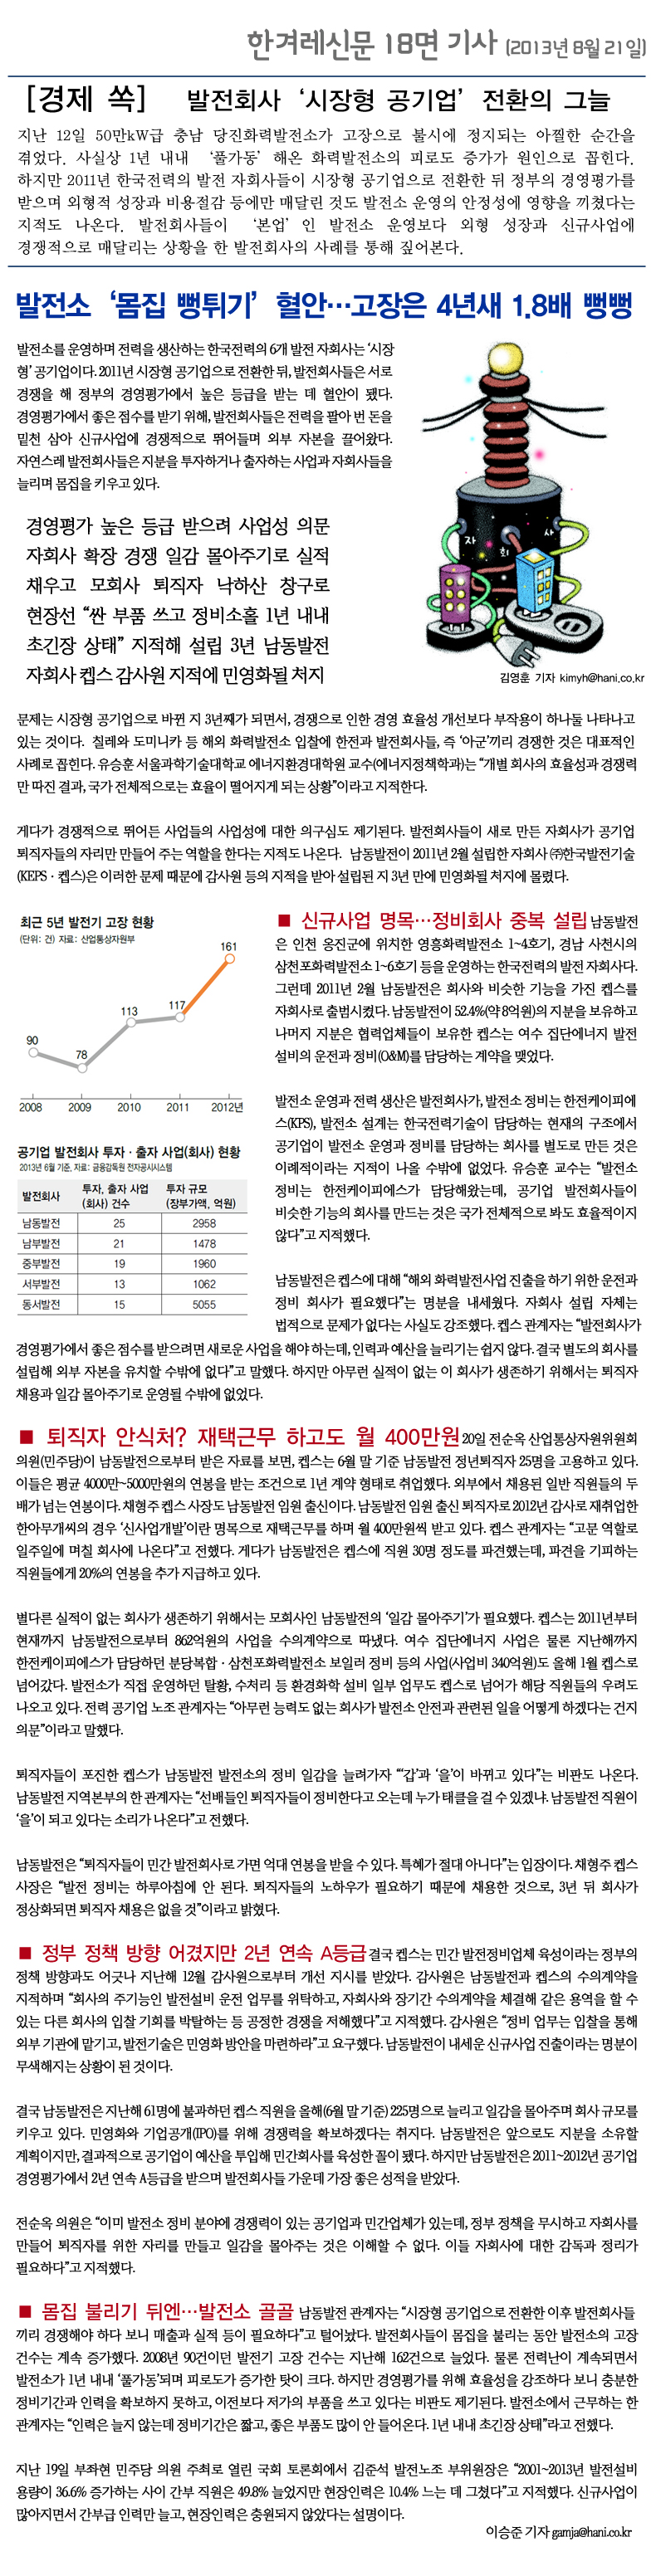 한겨레-2013-8-21(캡스).jpg